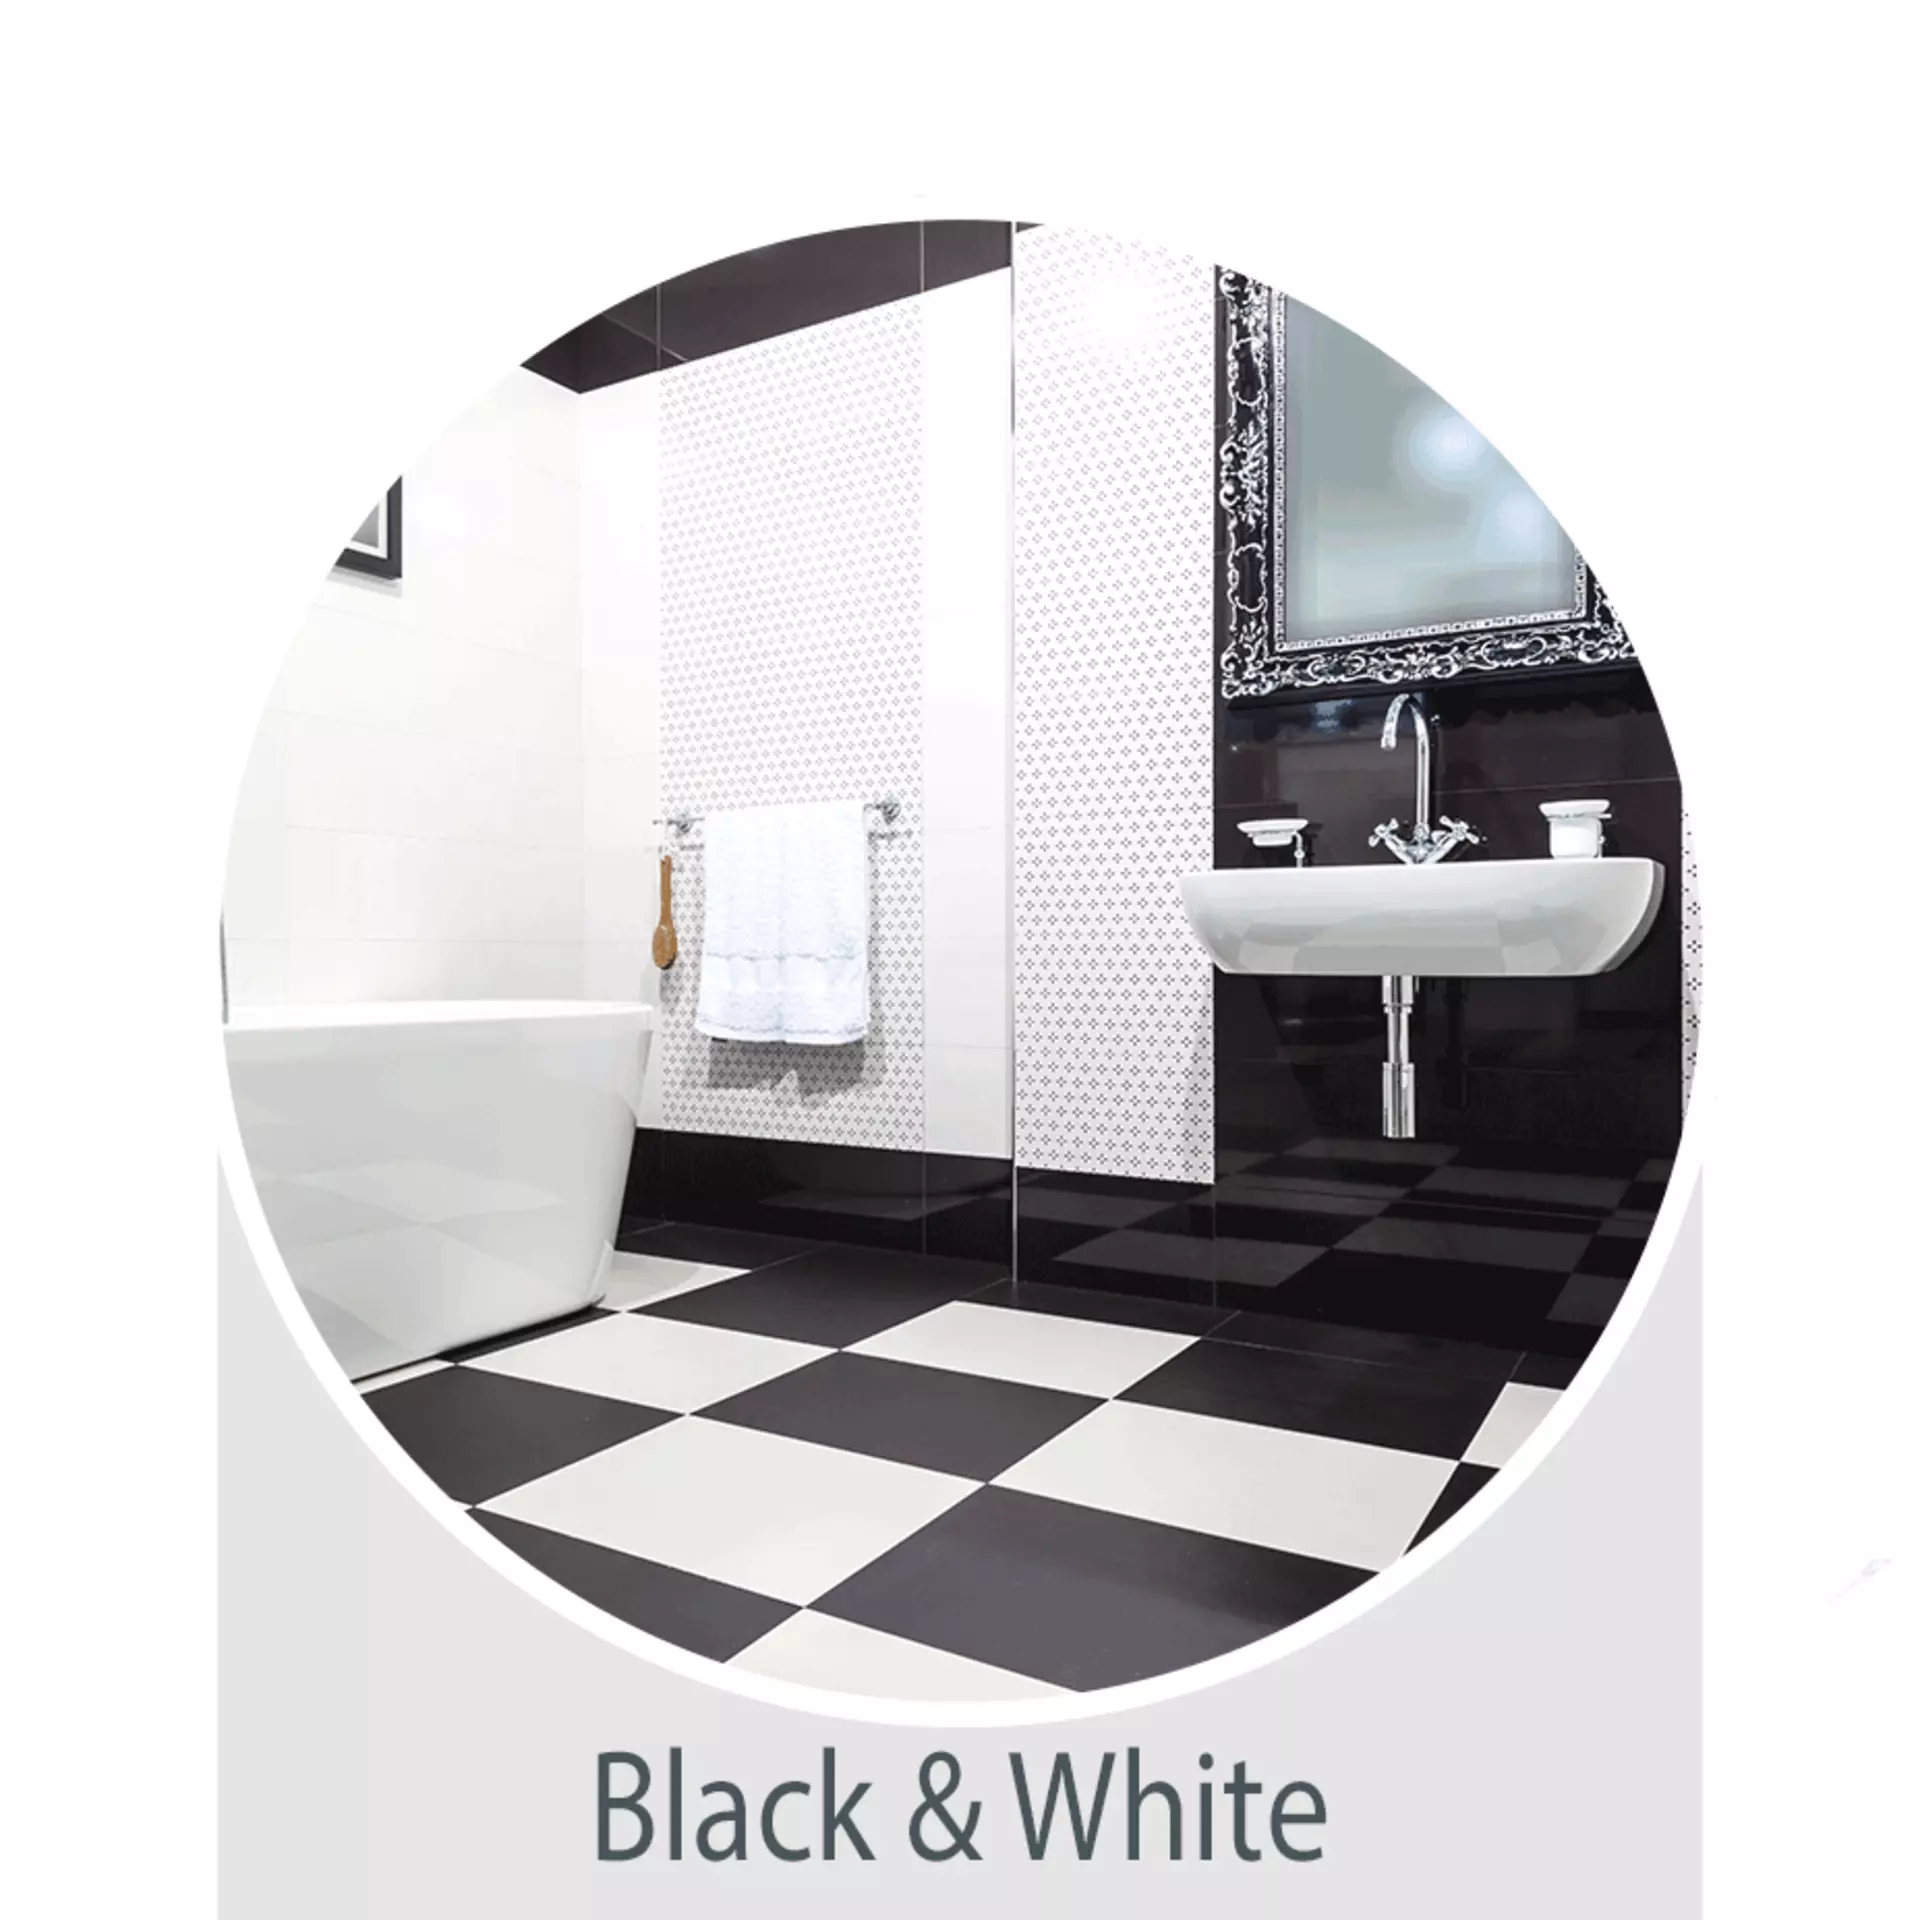 Der Wohntrend Black & White: das Bad in schwatz-weiß - jetzt bei Möbel Inhofer entdecken und inspirieren lassen